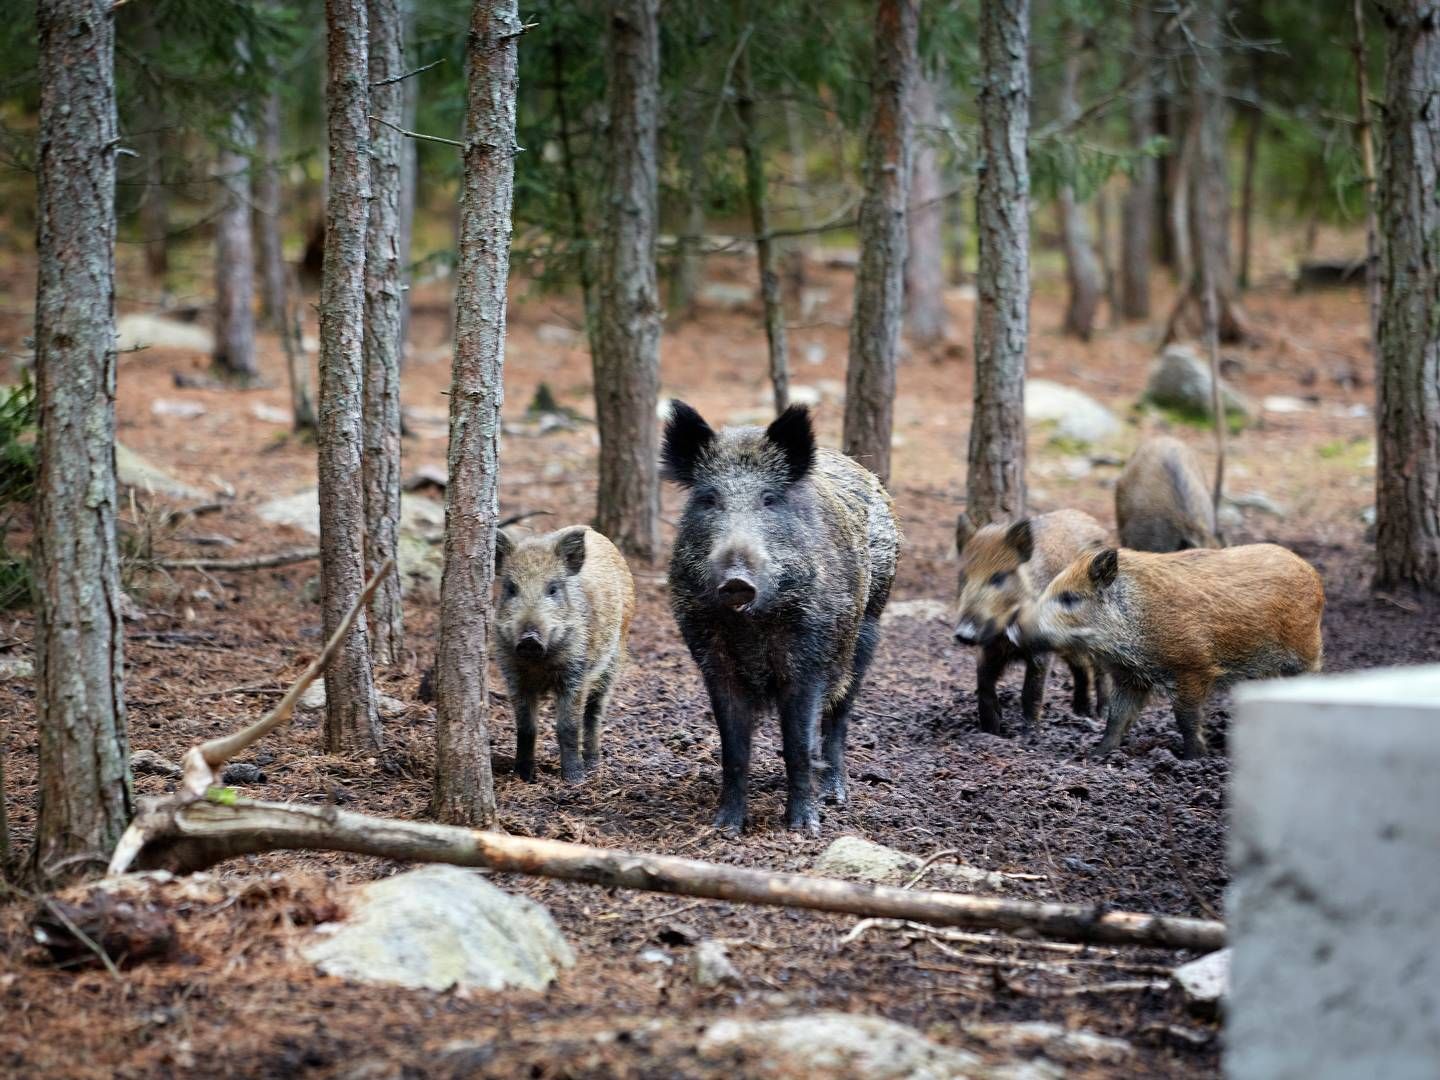 Afrikansk svinepest blev konstateret i Sverige i september. | Foto: Morten Langkilde